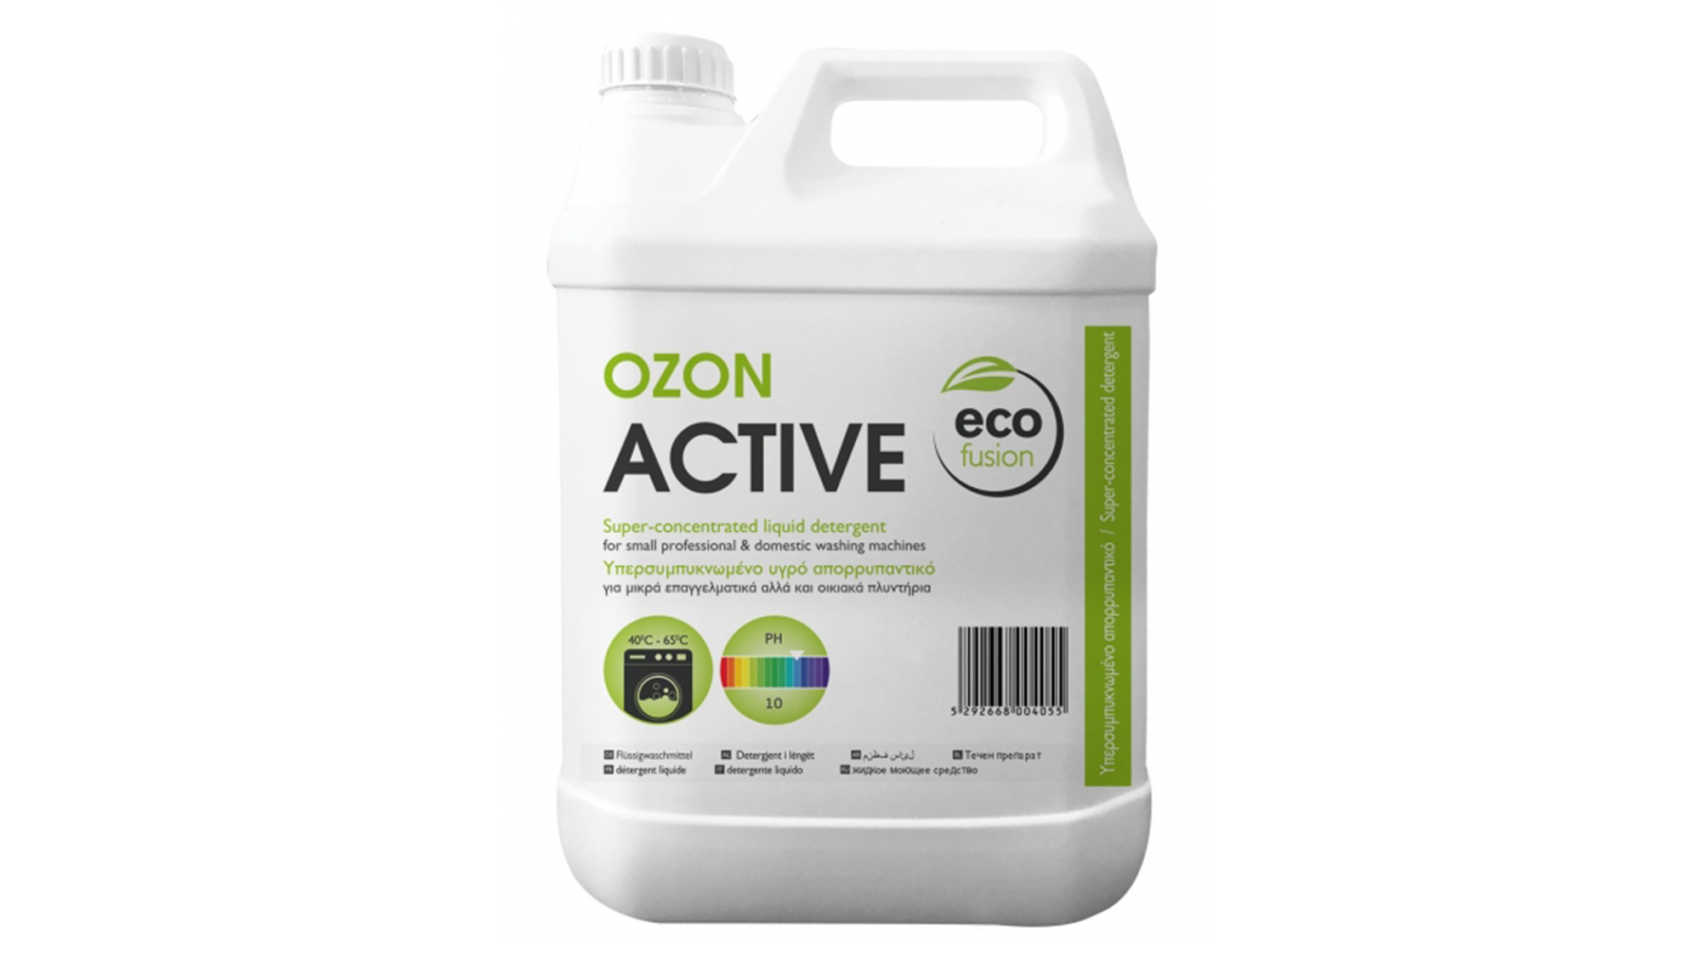 OZON_ACTIVE